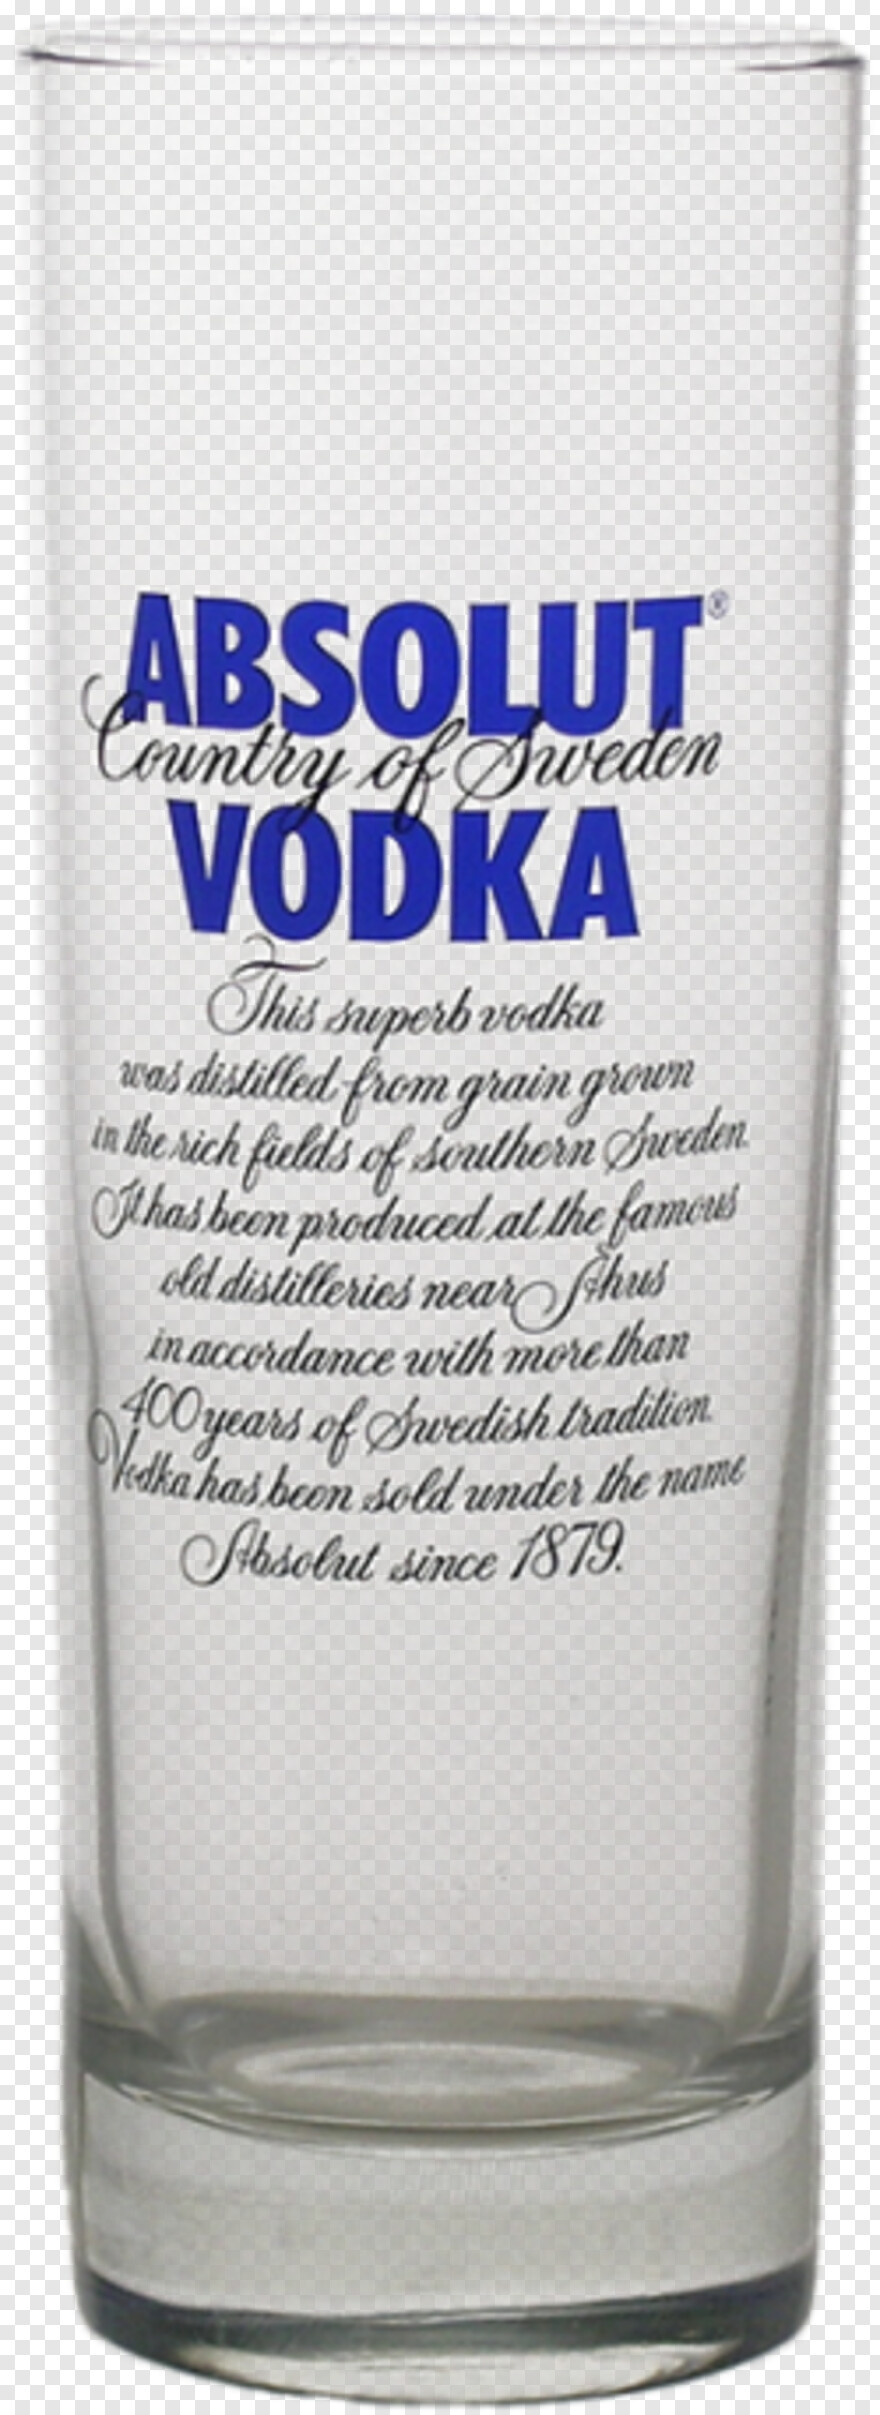 vodka-bottle # 912436